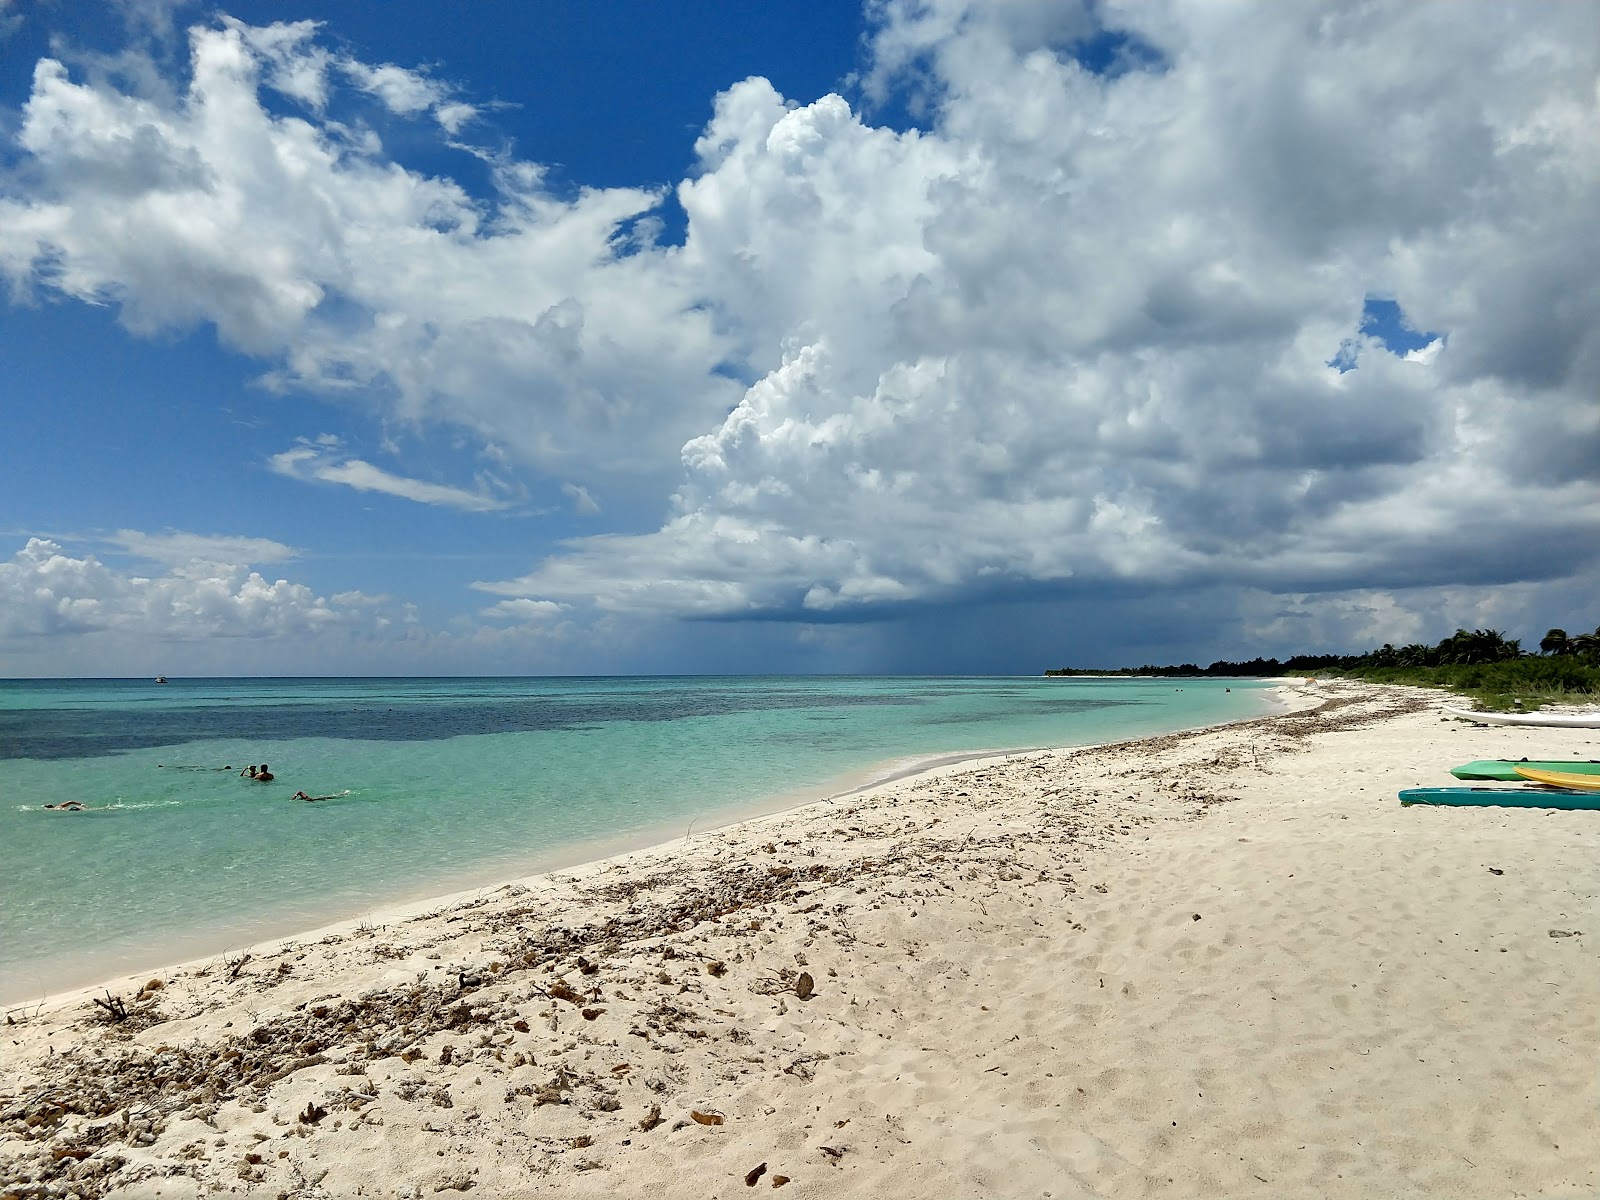 Foto af Playa Punta Sur - populært sted blandt afslapningskendere